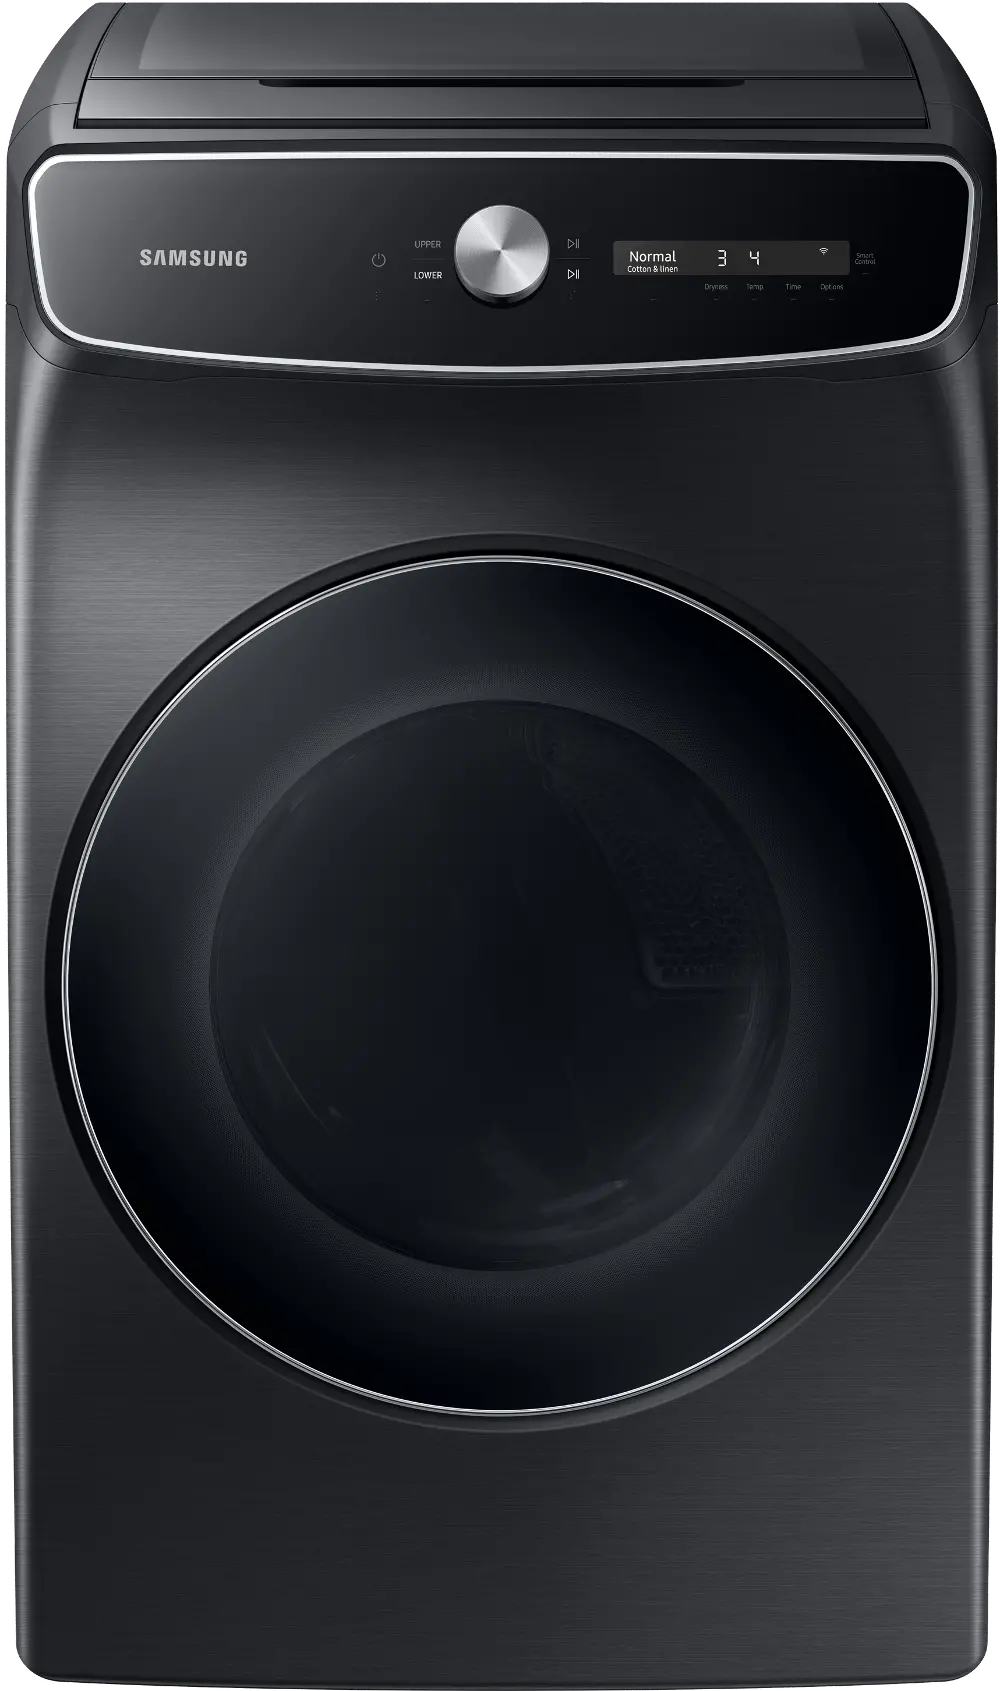 DVE60A9900V Samsung 7.5 cu ft Electric Dryer with Smart Dial - Black-1